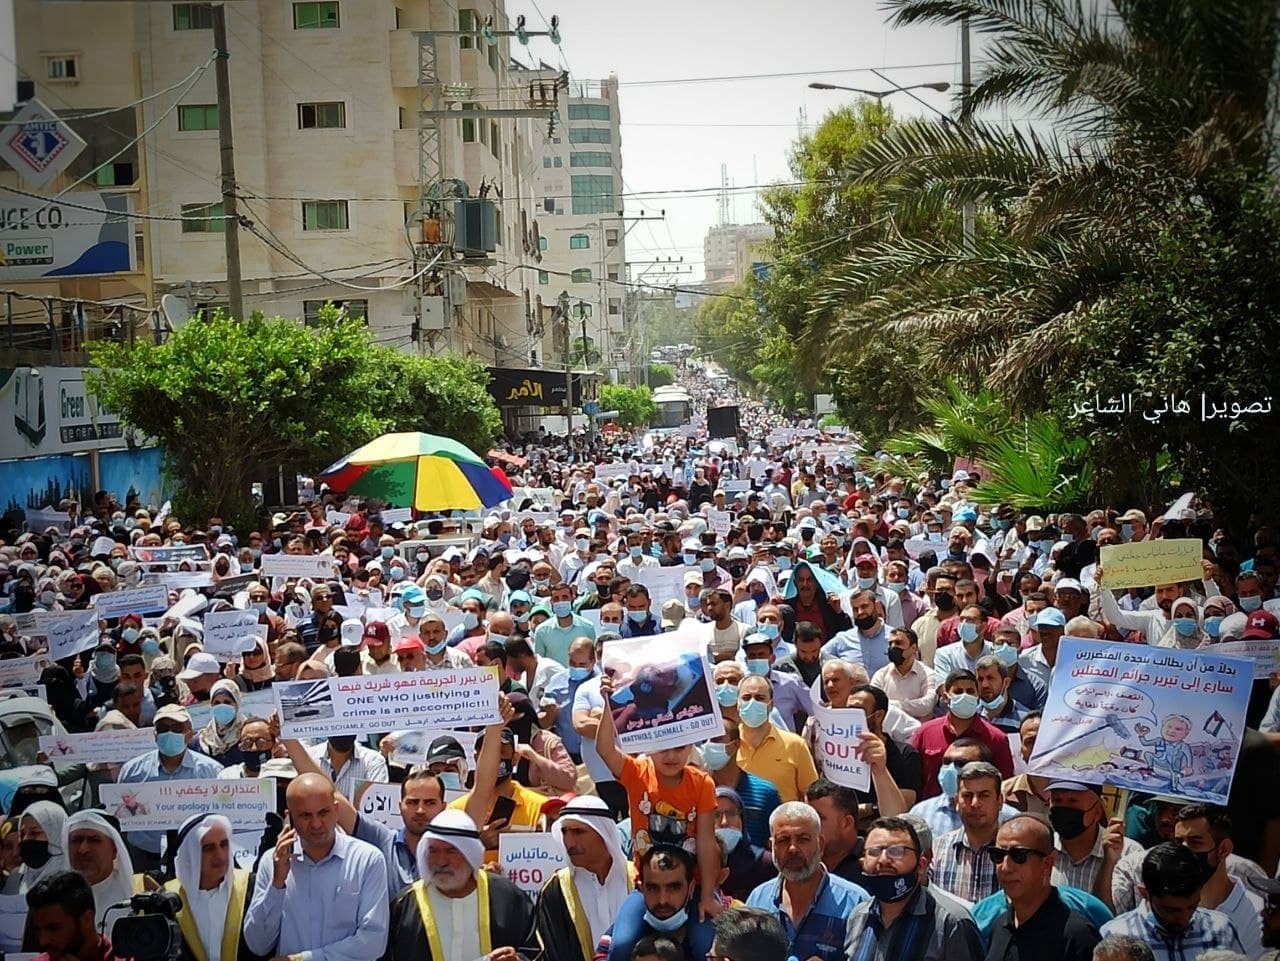 لآلاف يخرجون في غزة للمطالبة بإقالة مدير عمليات الوكالة ماتياس شمالي